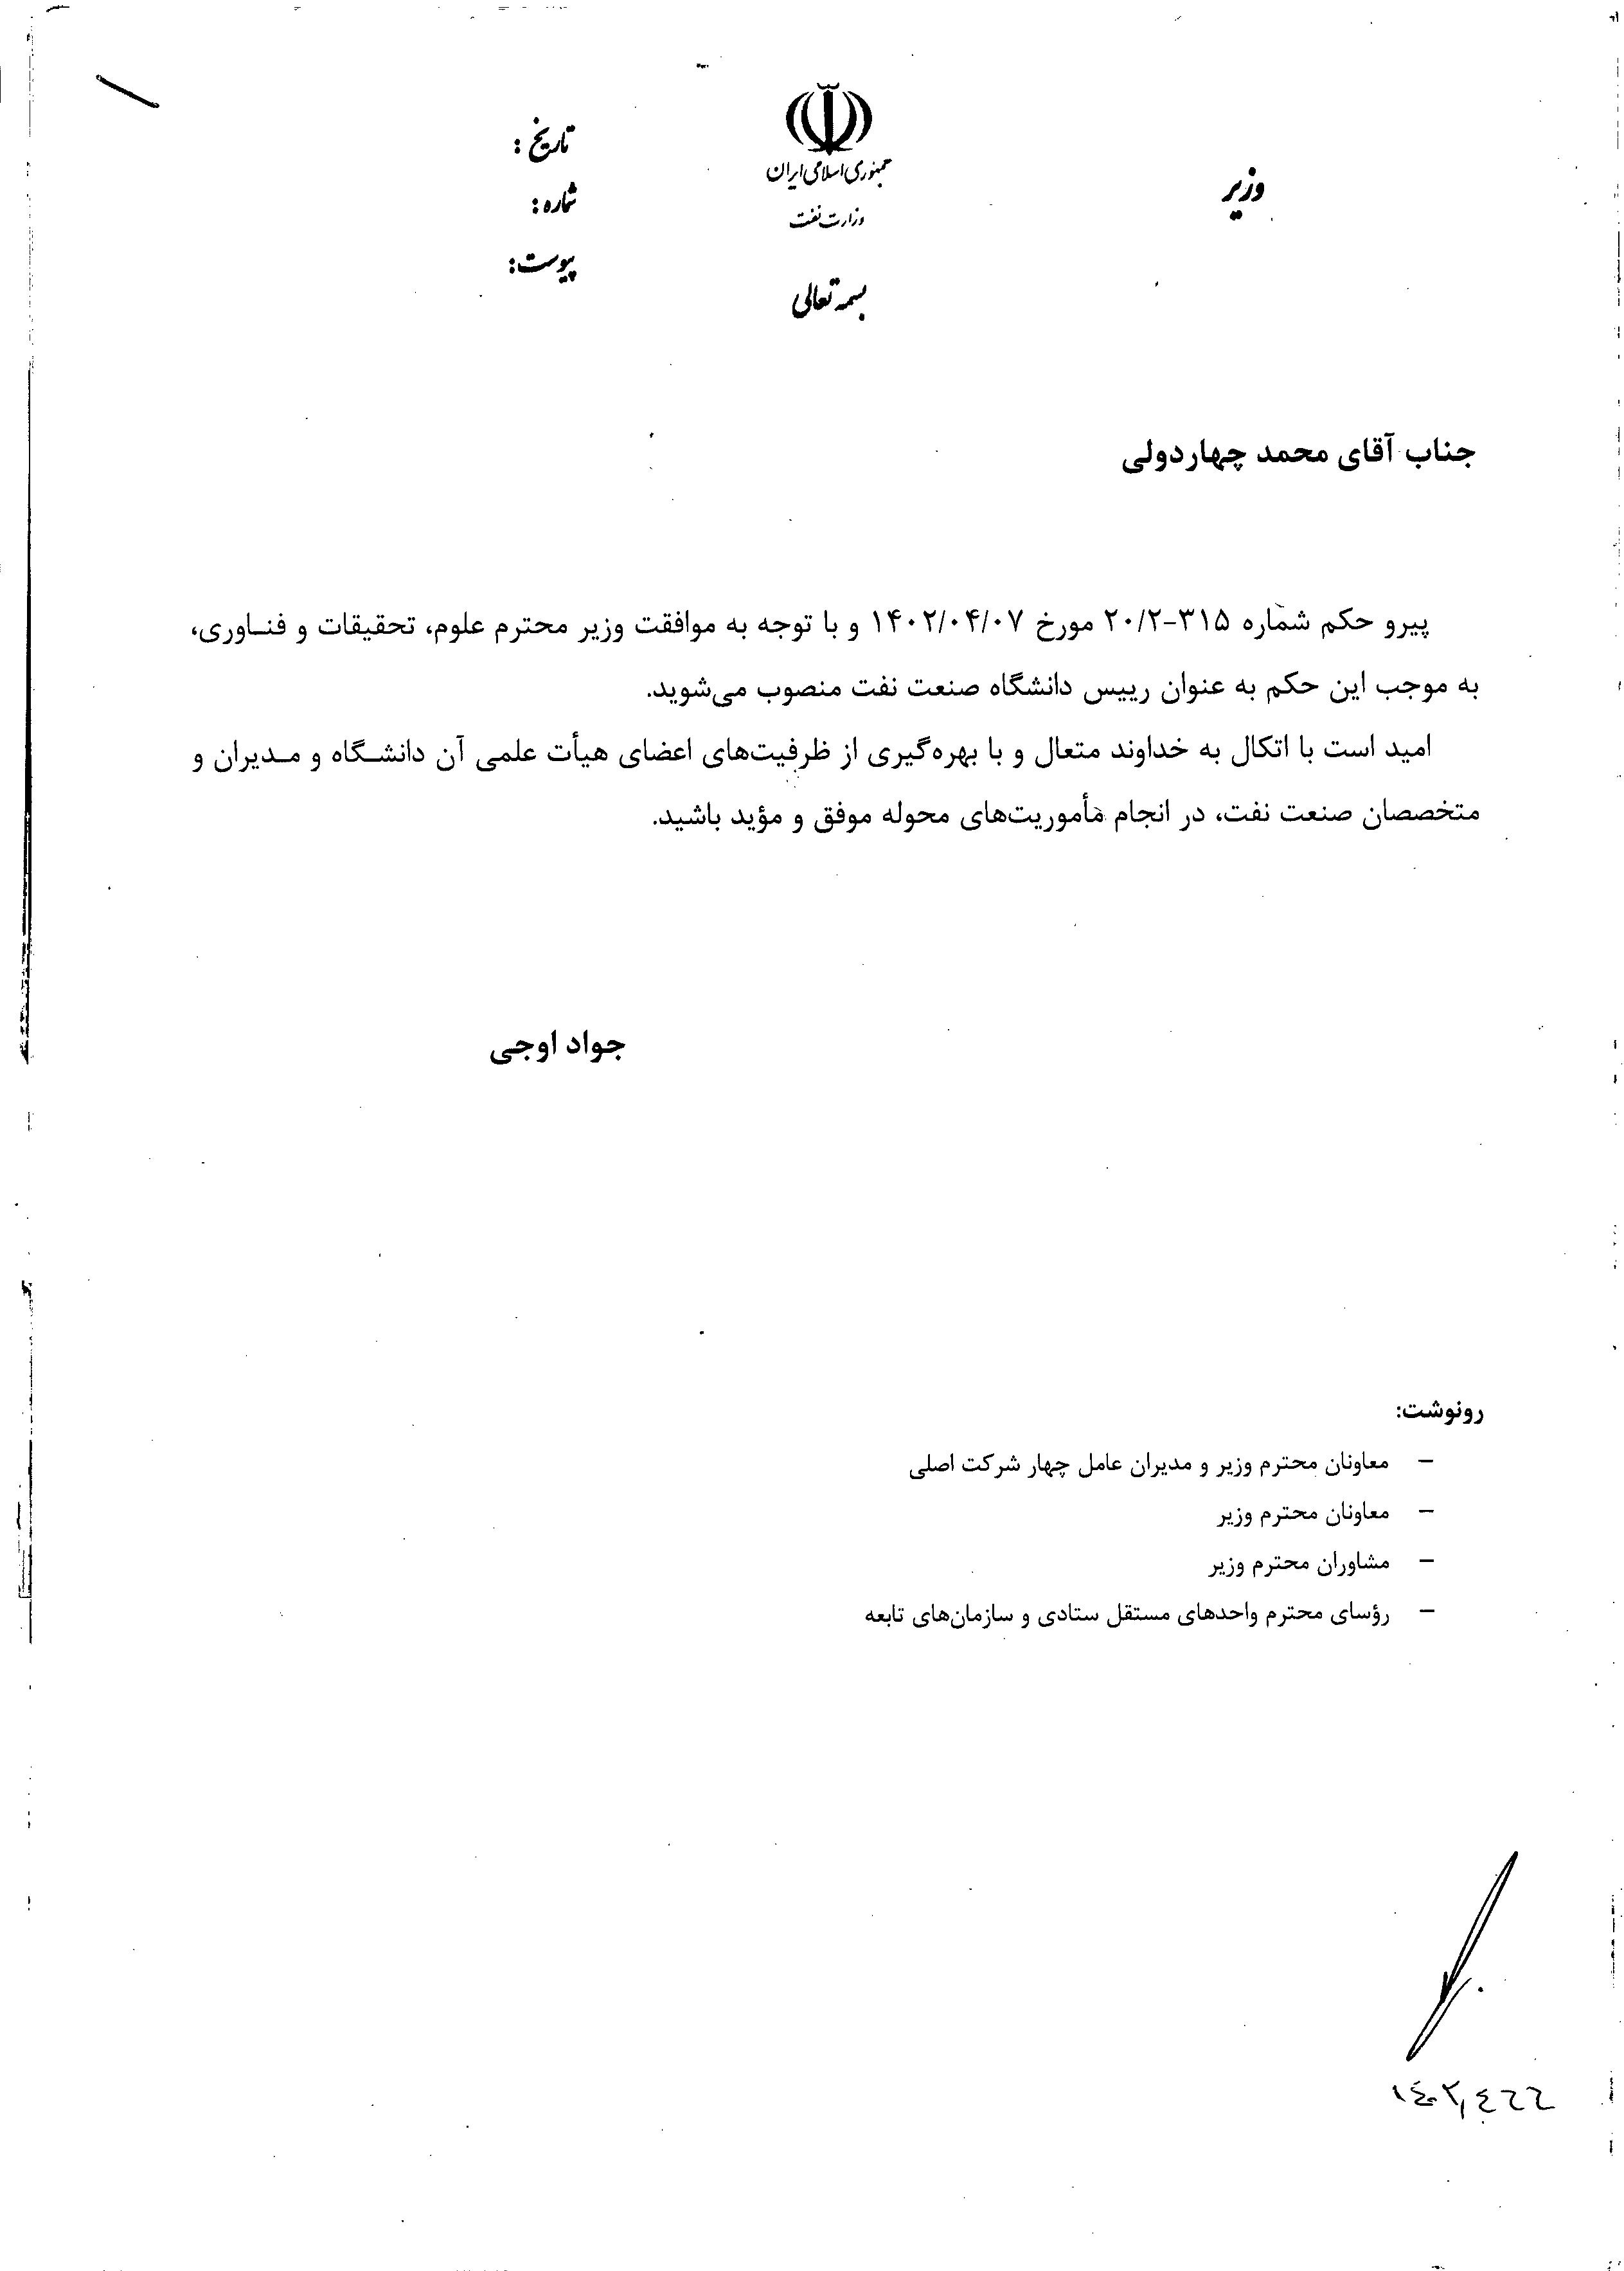 محمد چهاردولی به‌عنوان رئیس جدید دانشگاه صنعت نفت منصوب شد